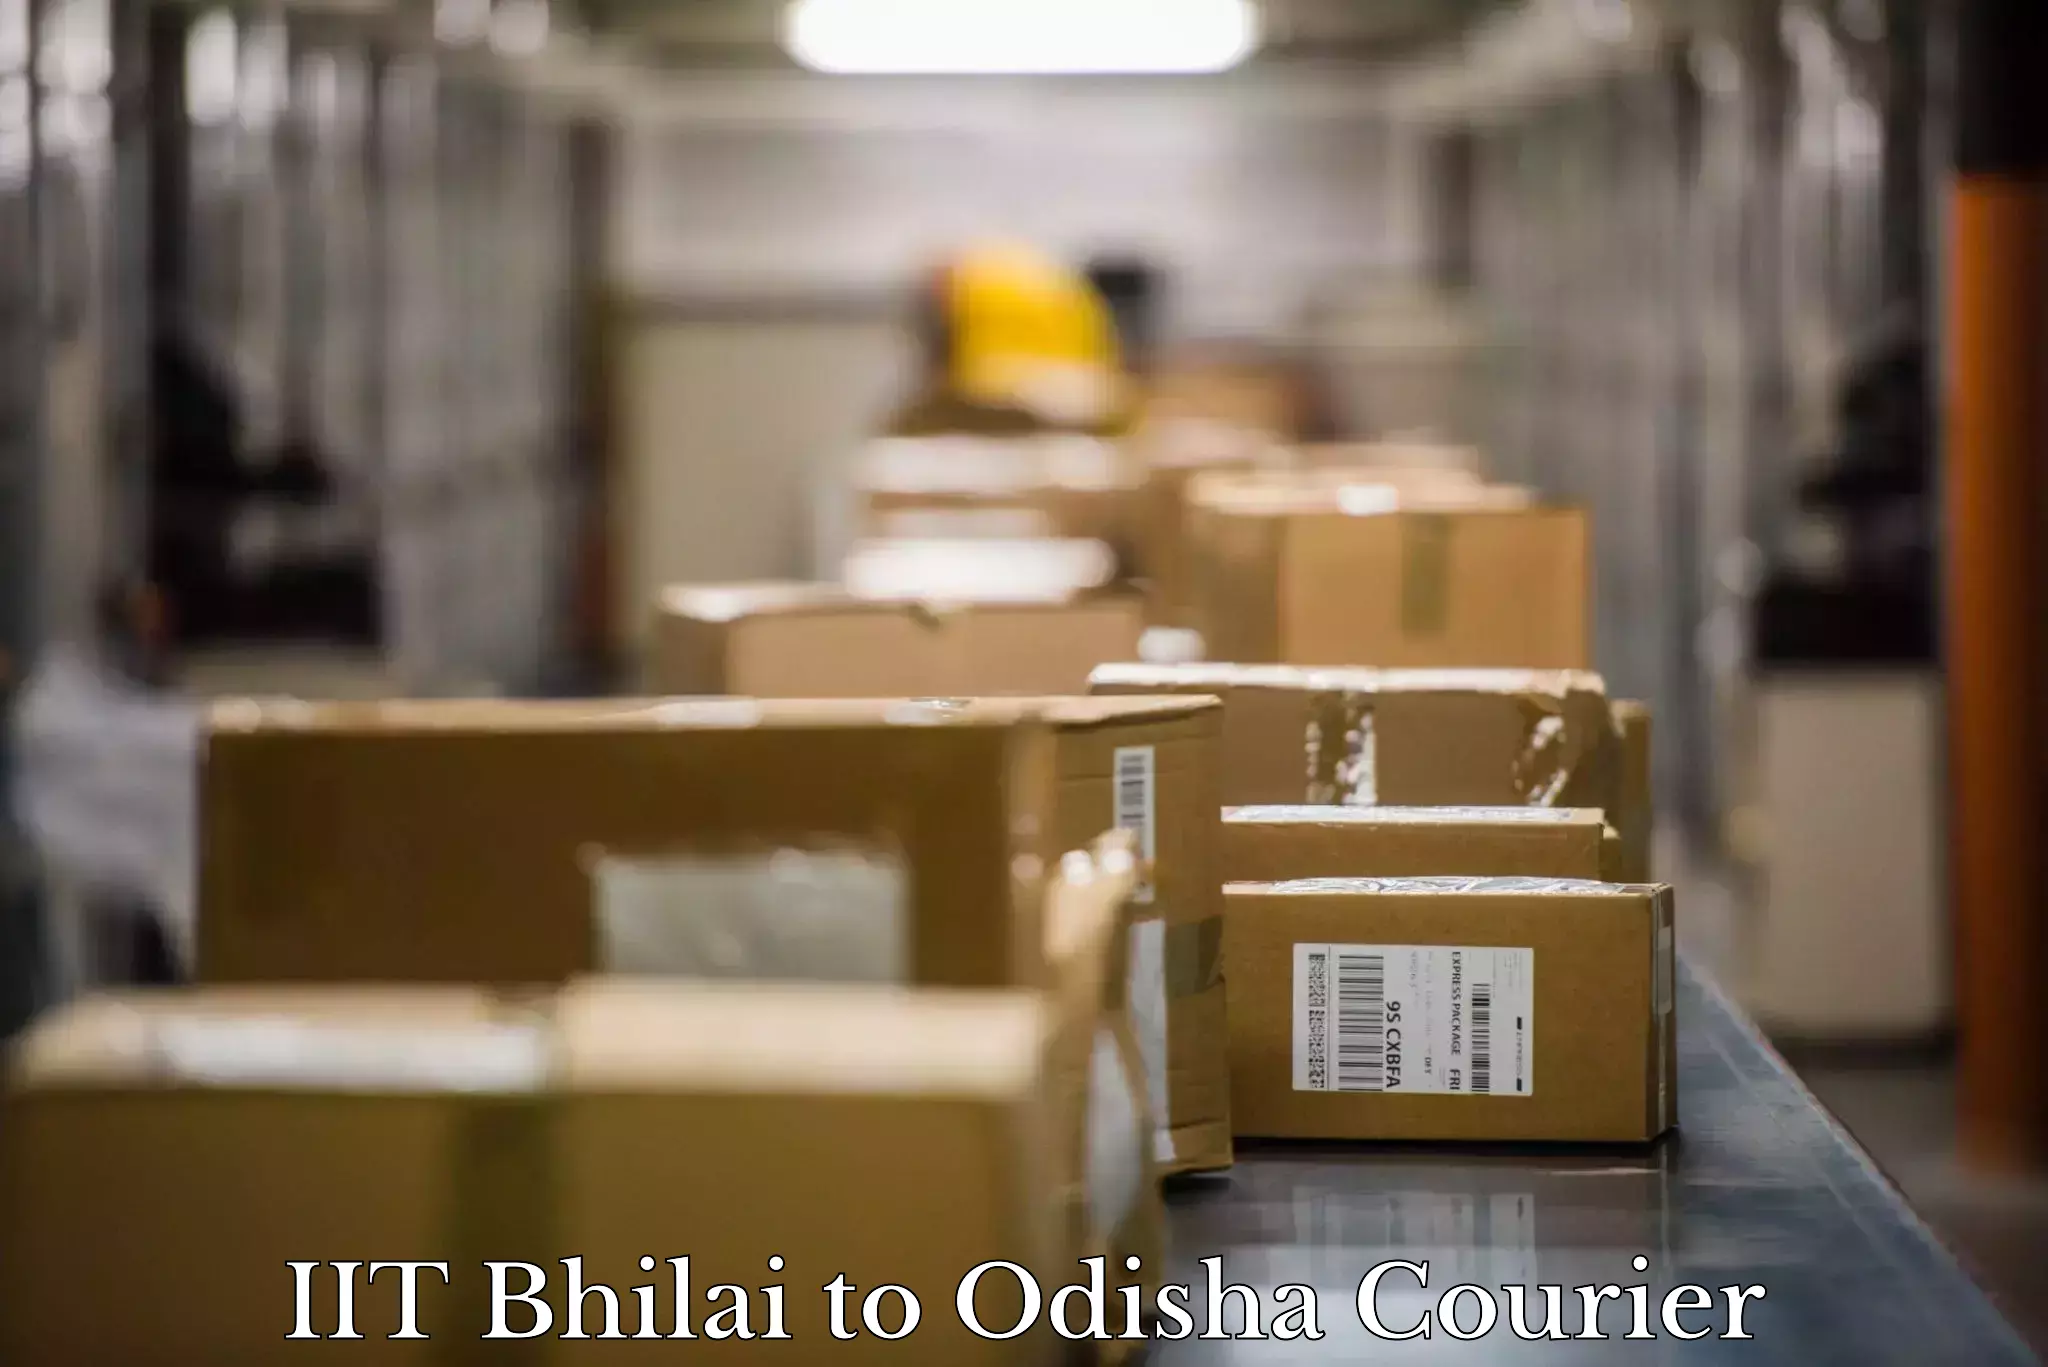 Furniture moving plans IIT Bhilai to Duburi